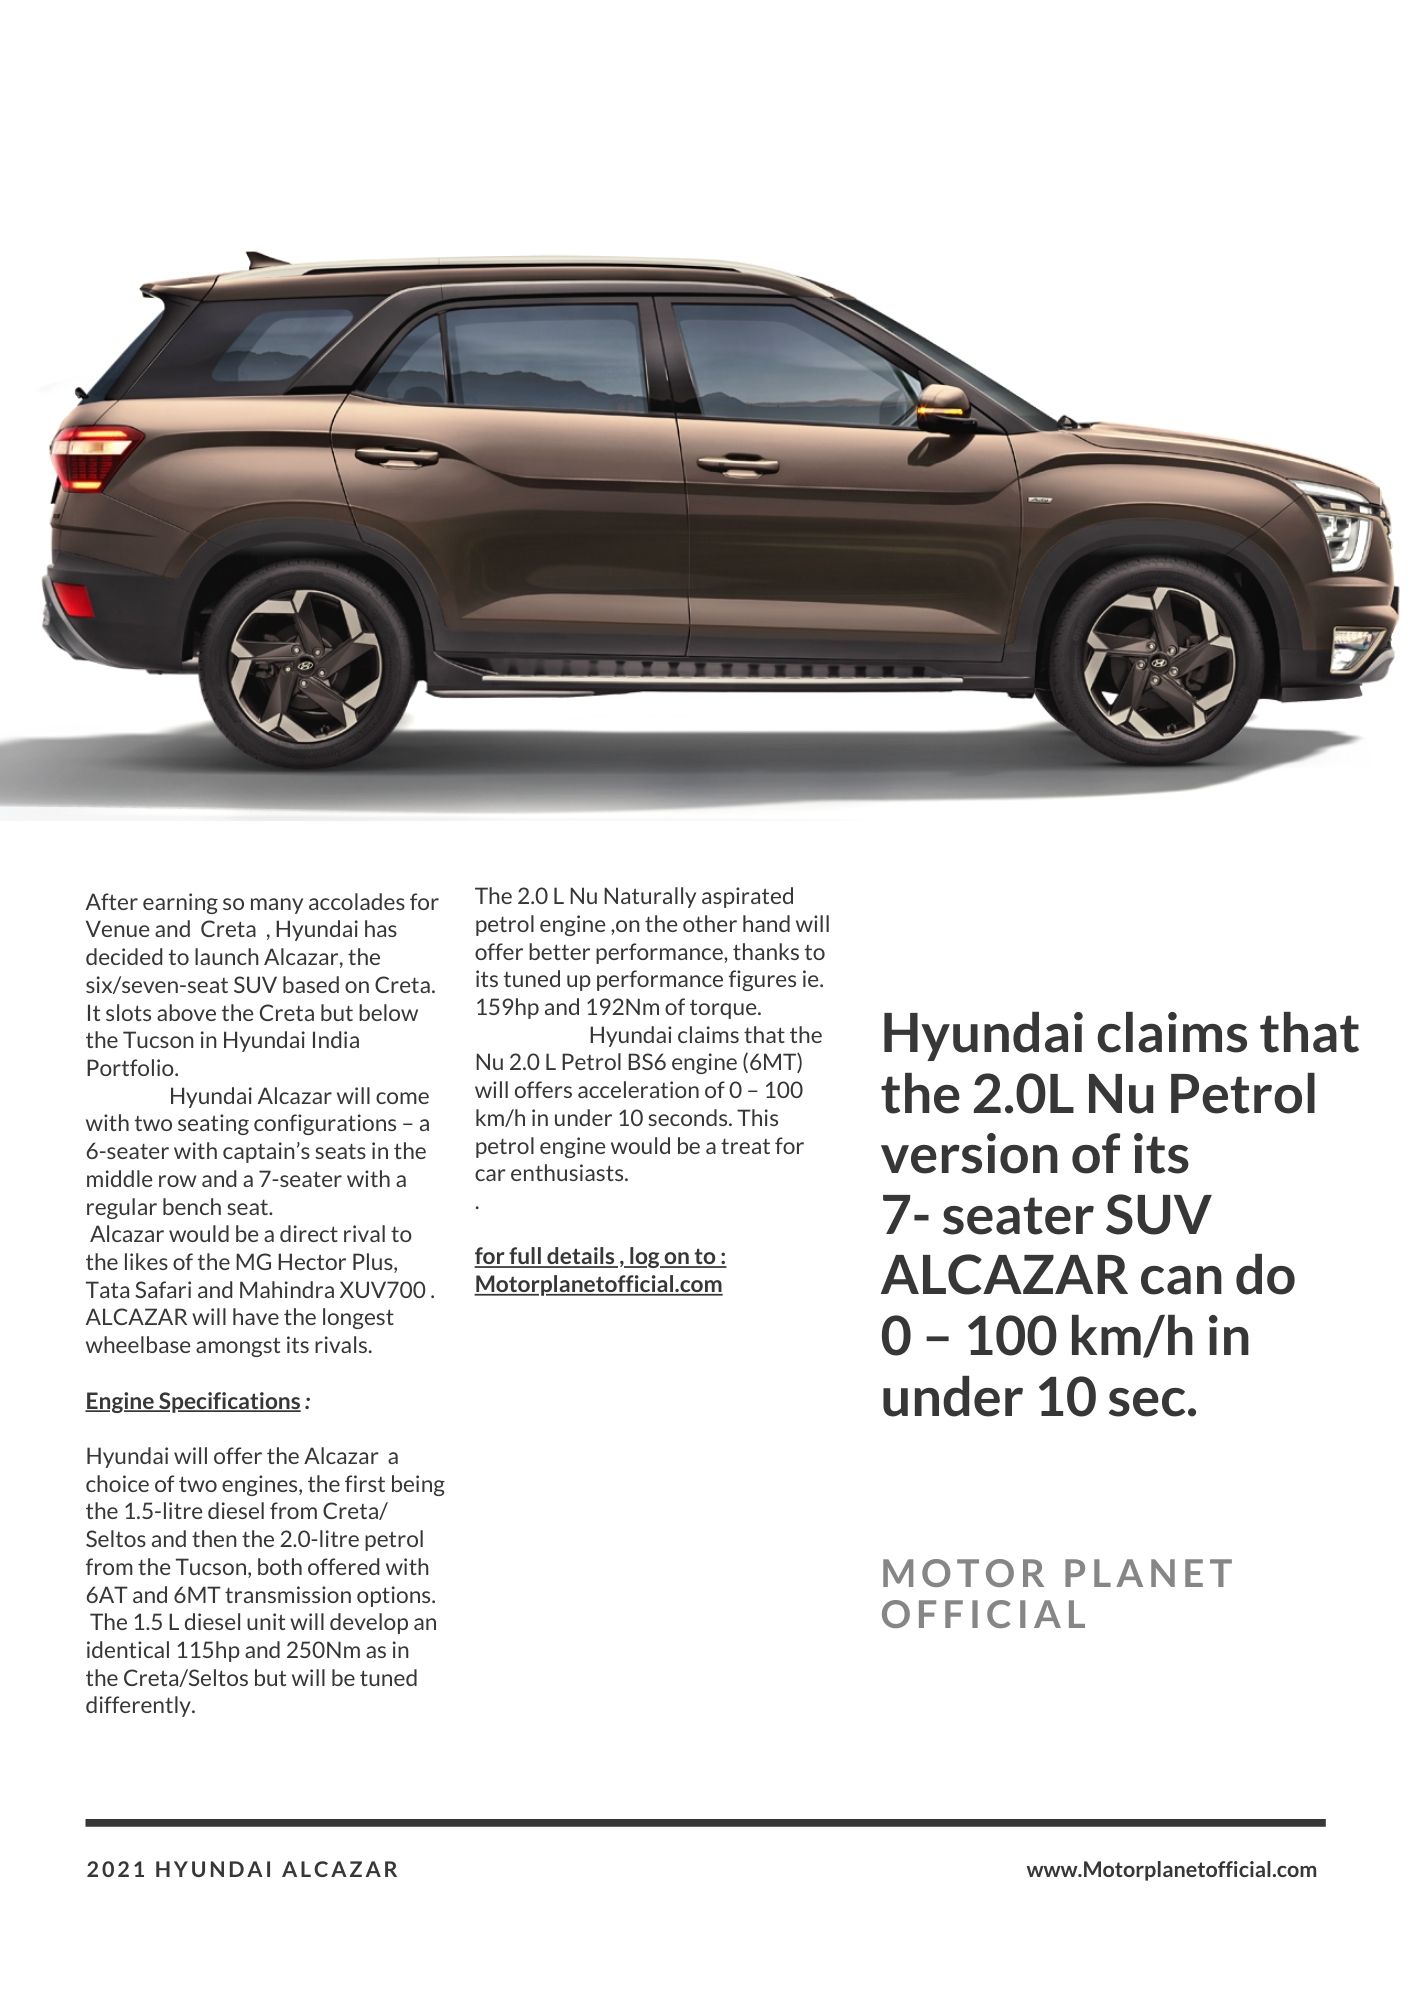 Hyundai ALCAZAR motor planet official